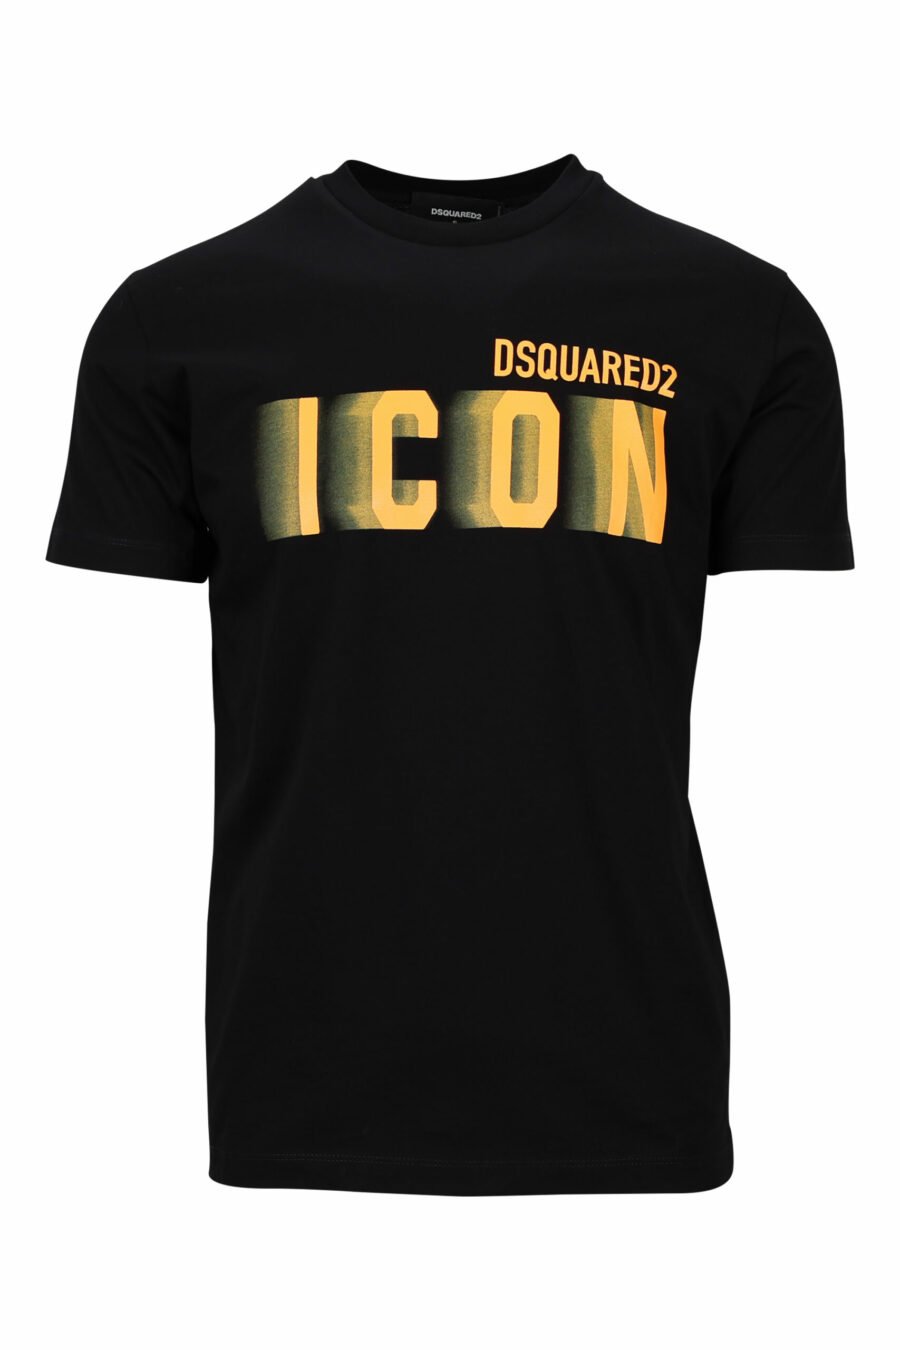 T-shirt noir avec maxilogo "icon" flou orange fluo - 8054148359195 scaled